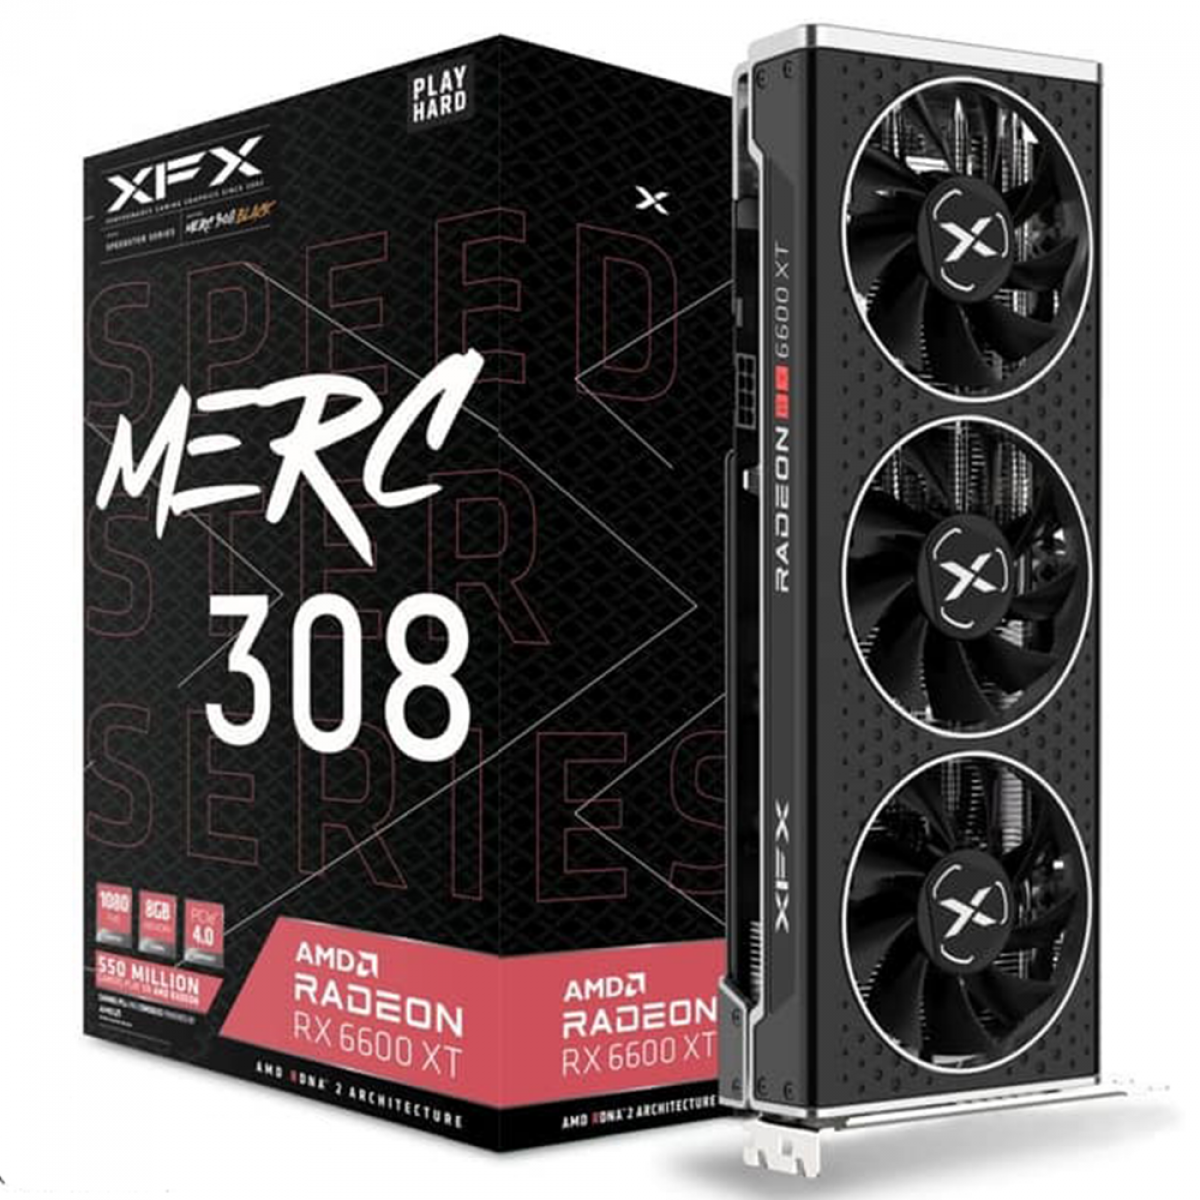 Placa de Vídeo XFX Speedster Merc 308 AMD Radeon RX 6600 XT, 8GB GDDR6, 16Gbps, RX-66XT8TBDQ